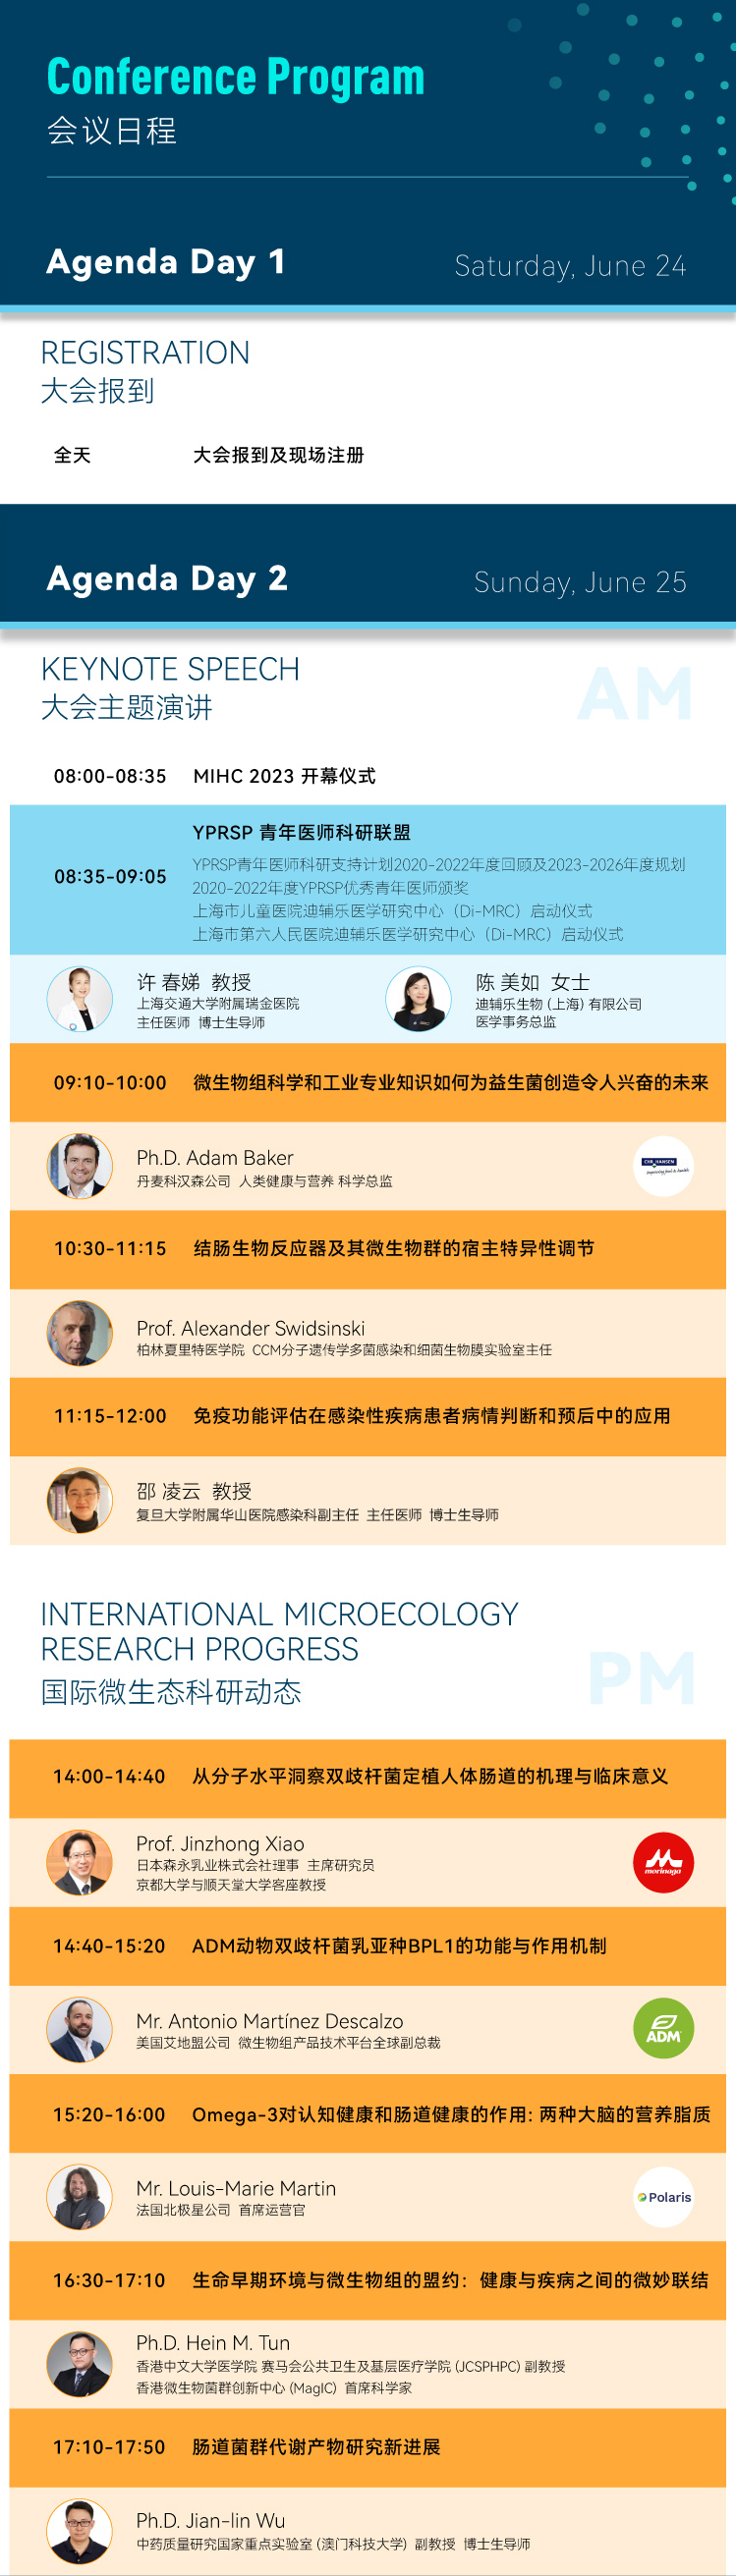 会议预告| 6月24-26日，全球微生态健康专家再聚MIHC2023！